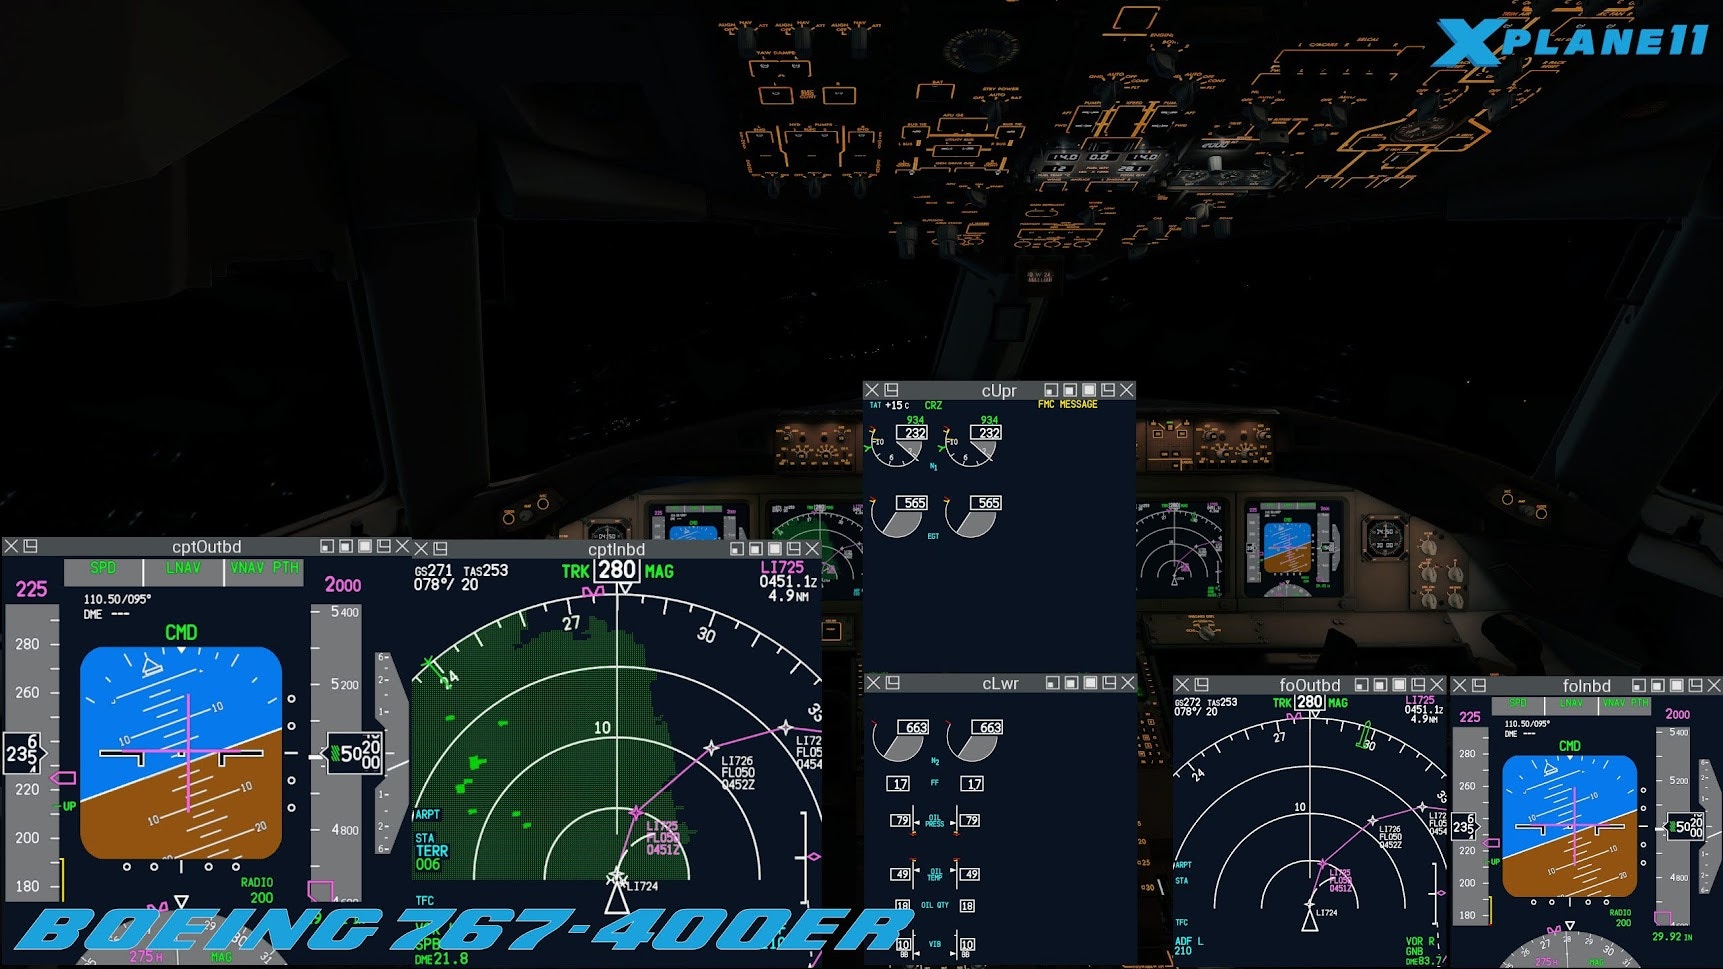 FlightFactor Releases B767-400ER for XP11